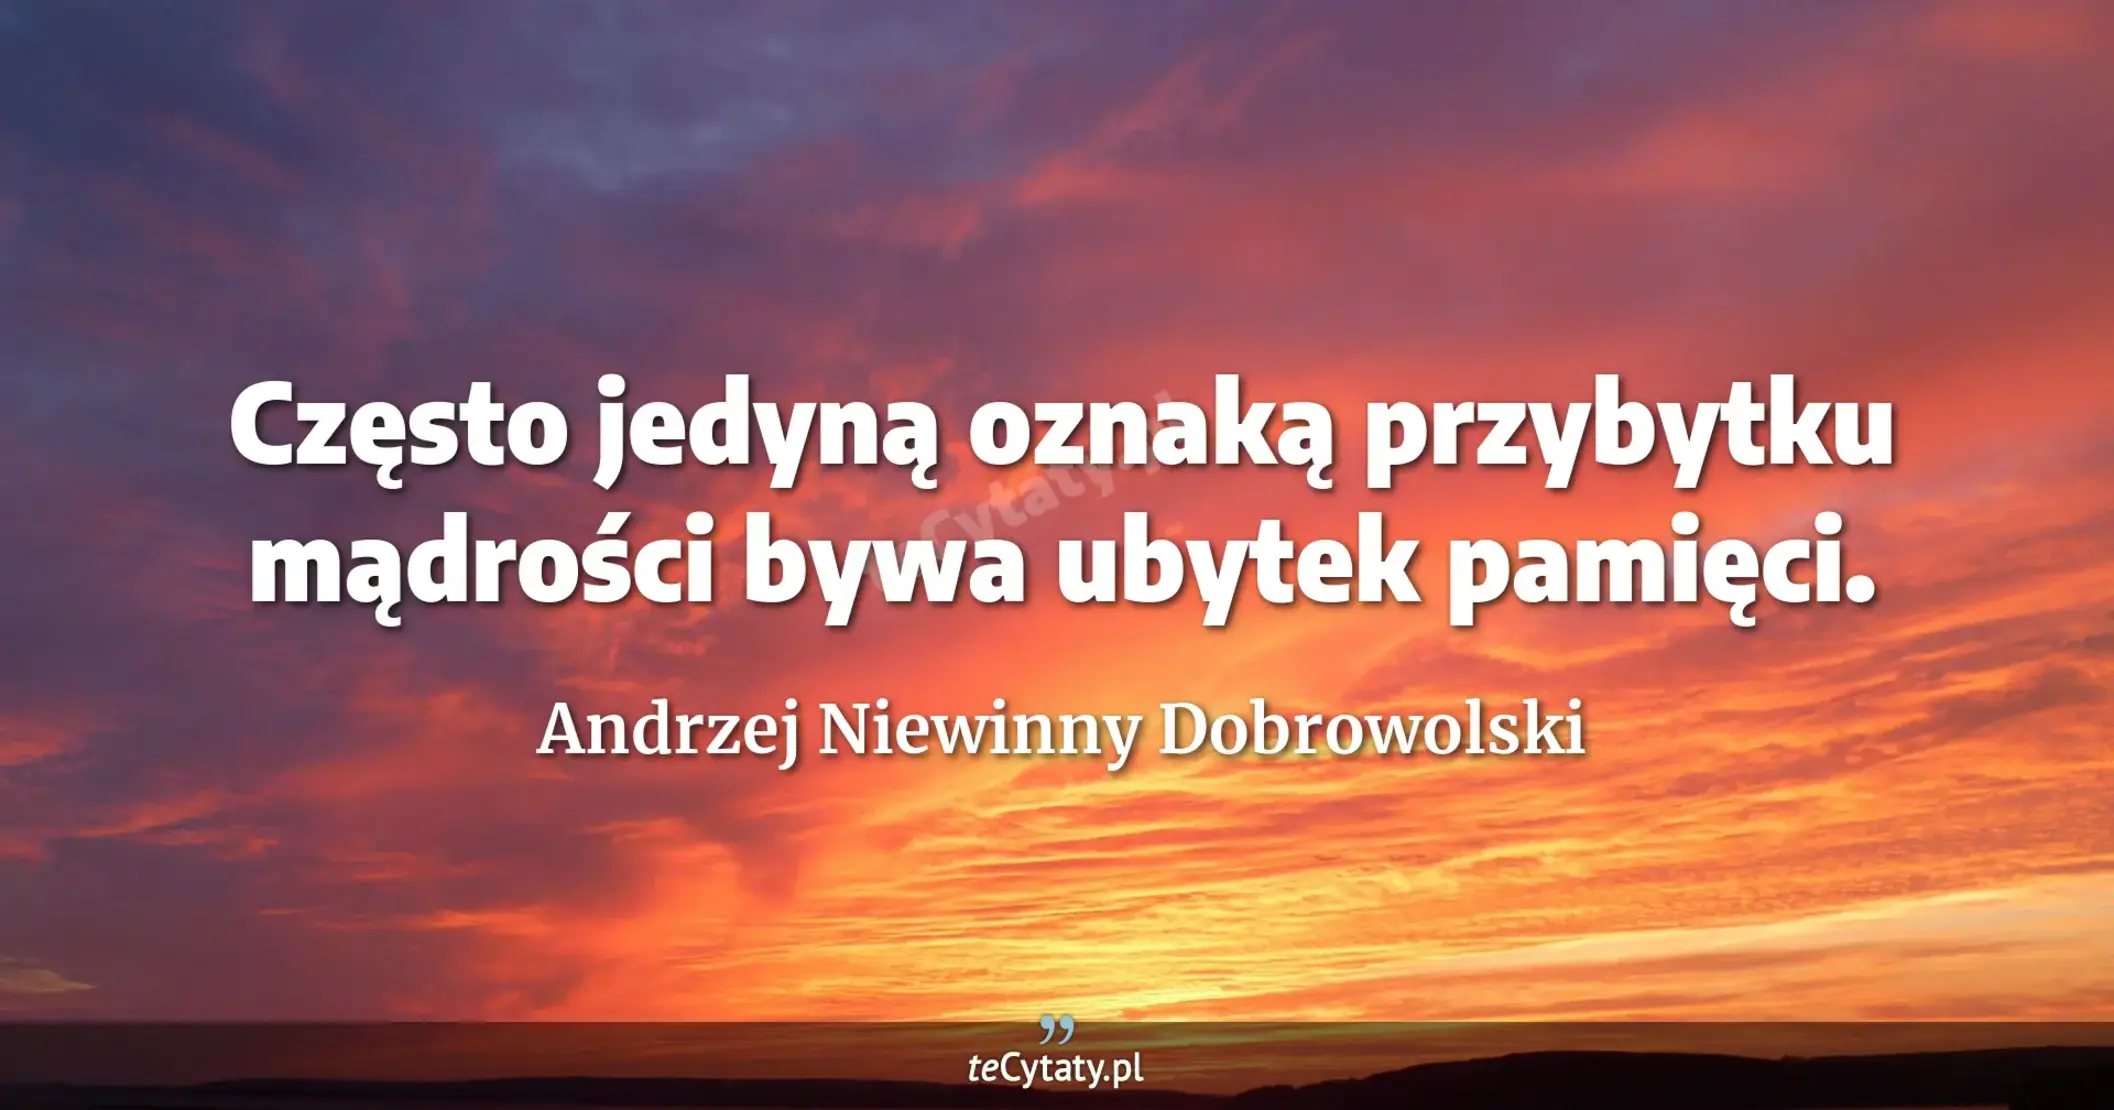 Często jedyną oznaką przybytku mądrości bywa ubytek pamięci. - Andrzej Niewinny Dobrowolski